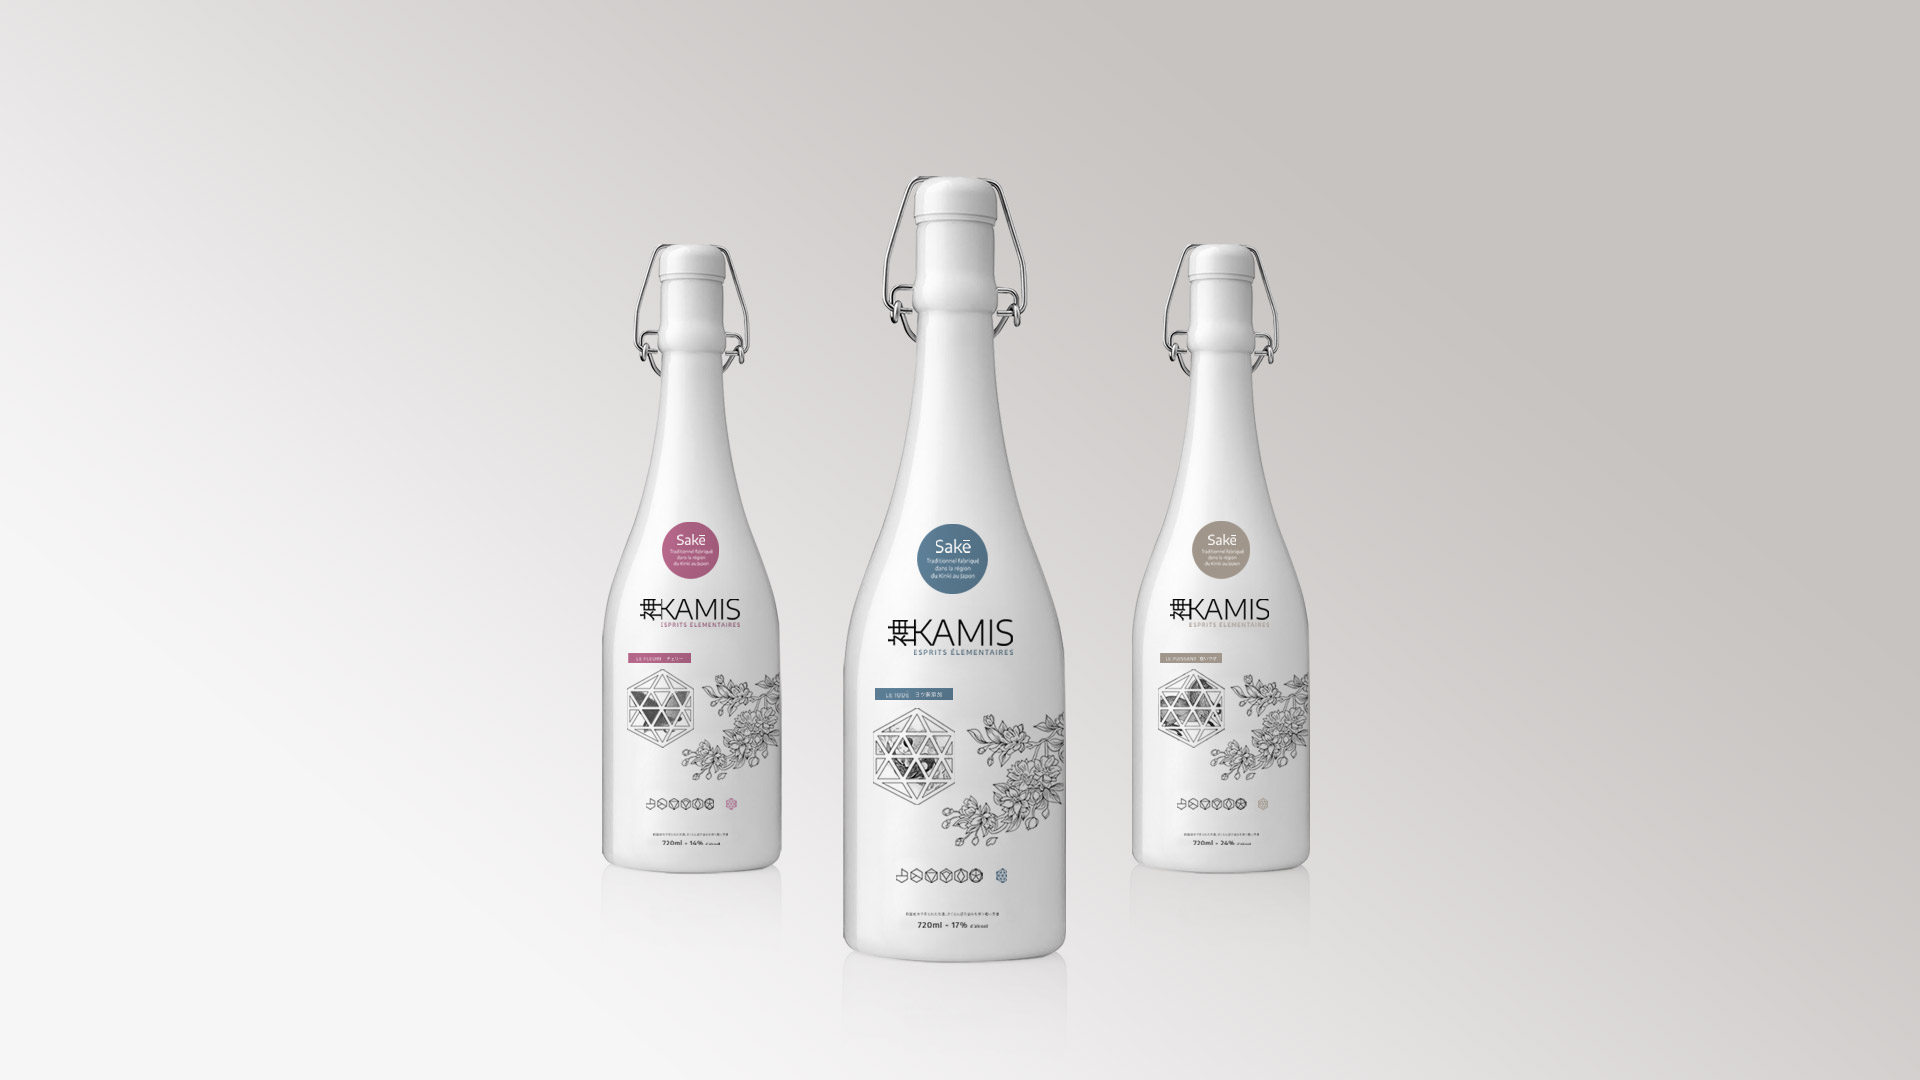 Création de packagings de bouteilles pour la gamme de saké Kamis